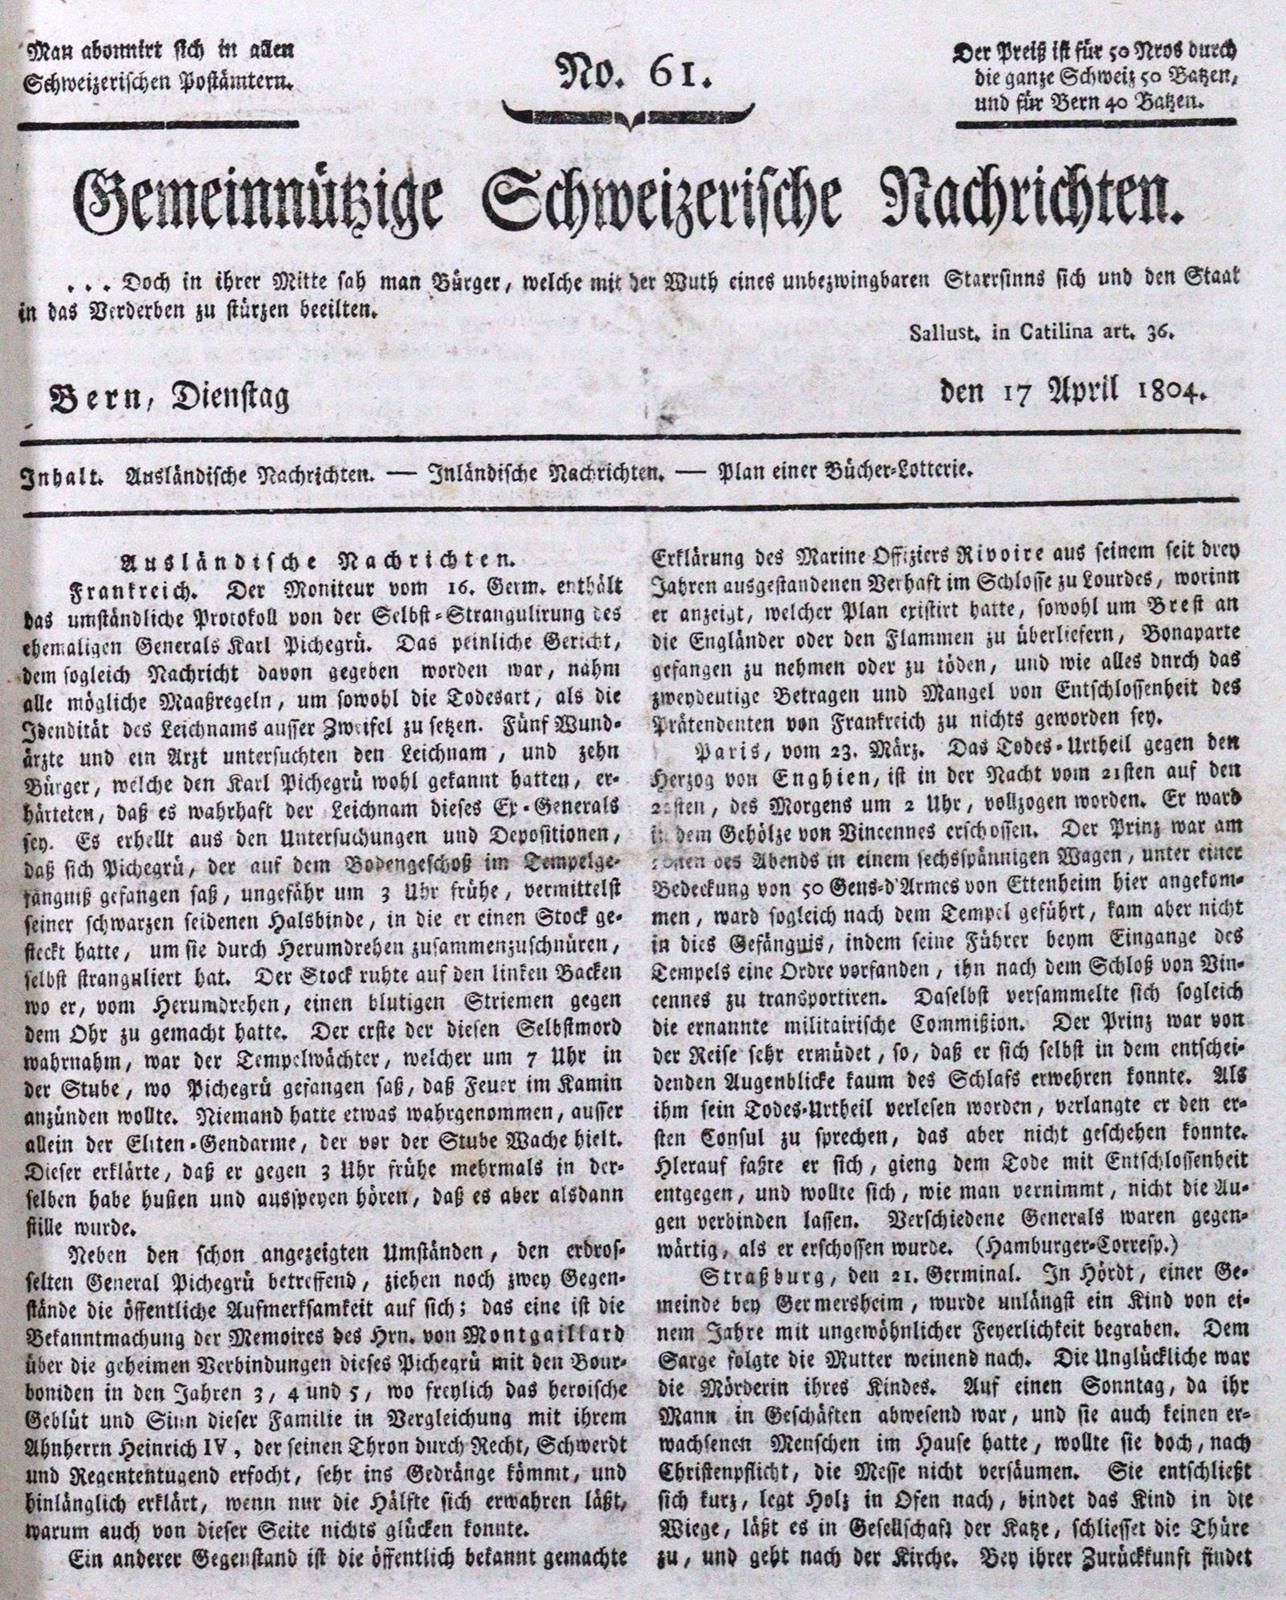 Gemeinnützige Schweizerische Nachrichten. Jg. 1804. Bern 1804. Kl.4°. 728 S. Mod&hellip;